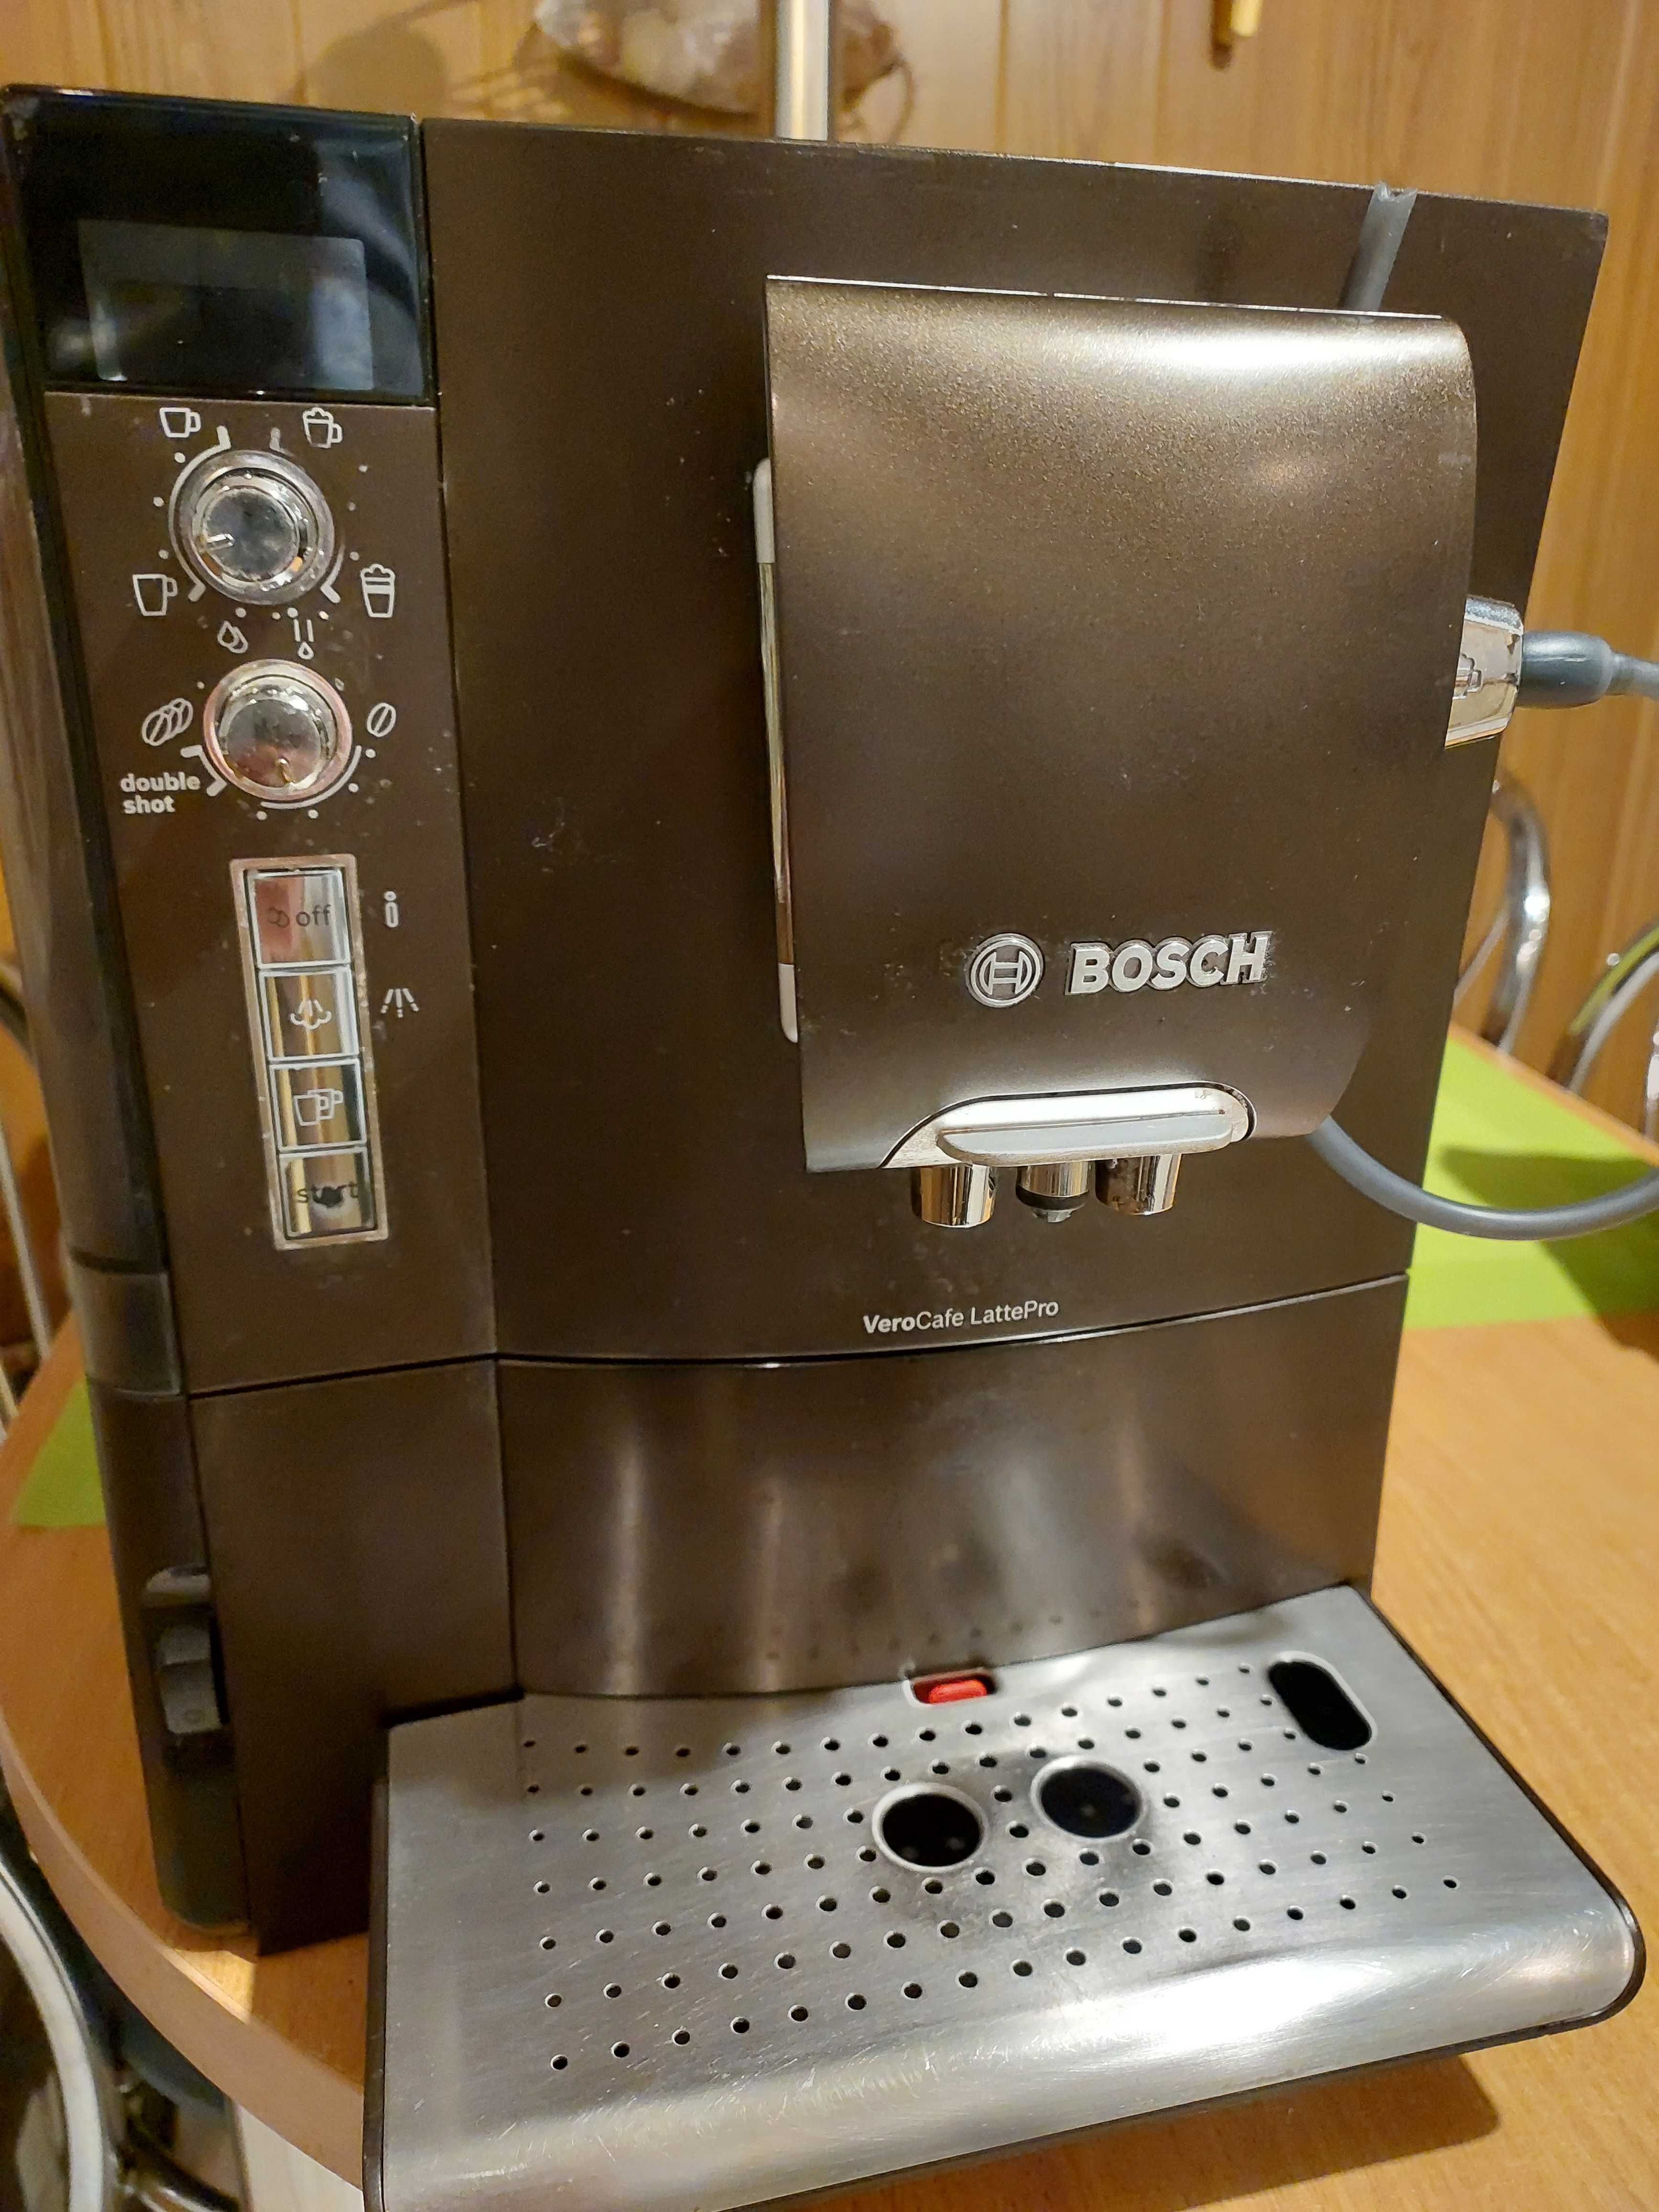 Ekspres automatyczny do kawy marki Bosch VeroCafe LattePro